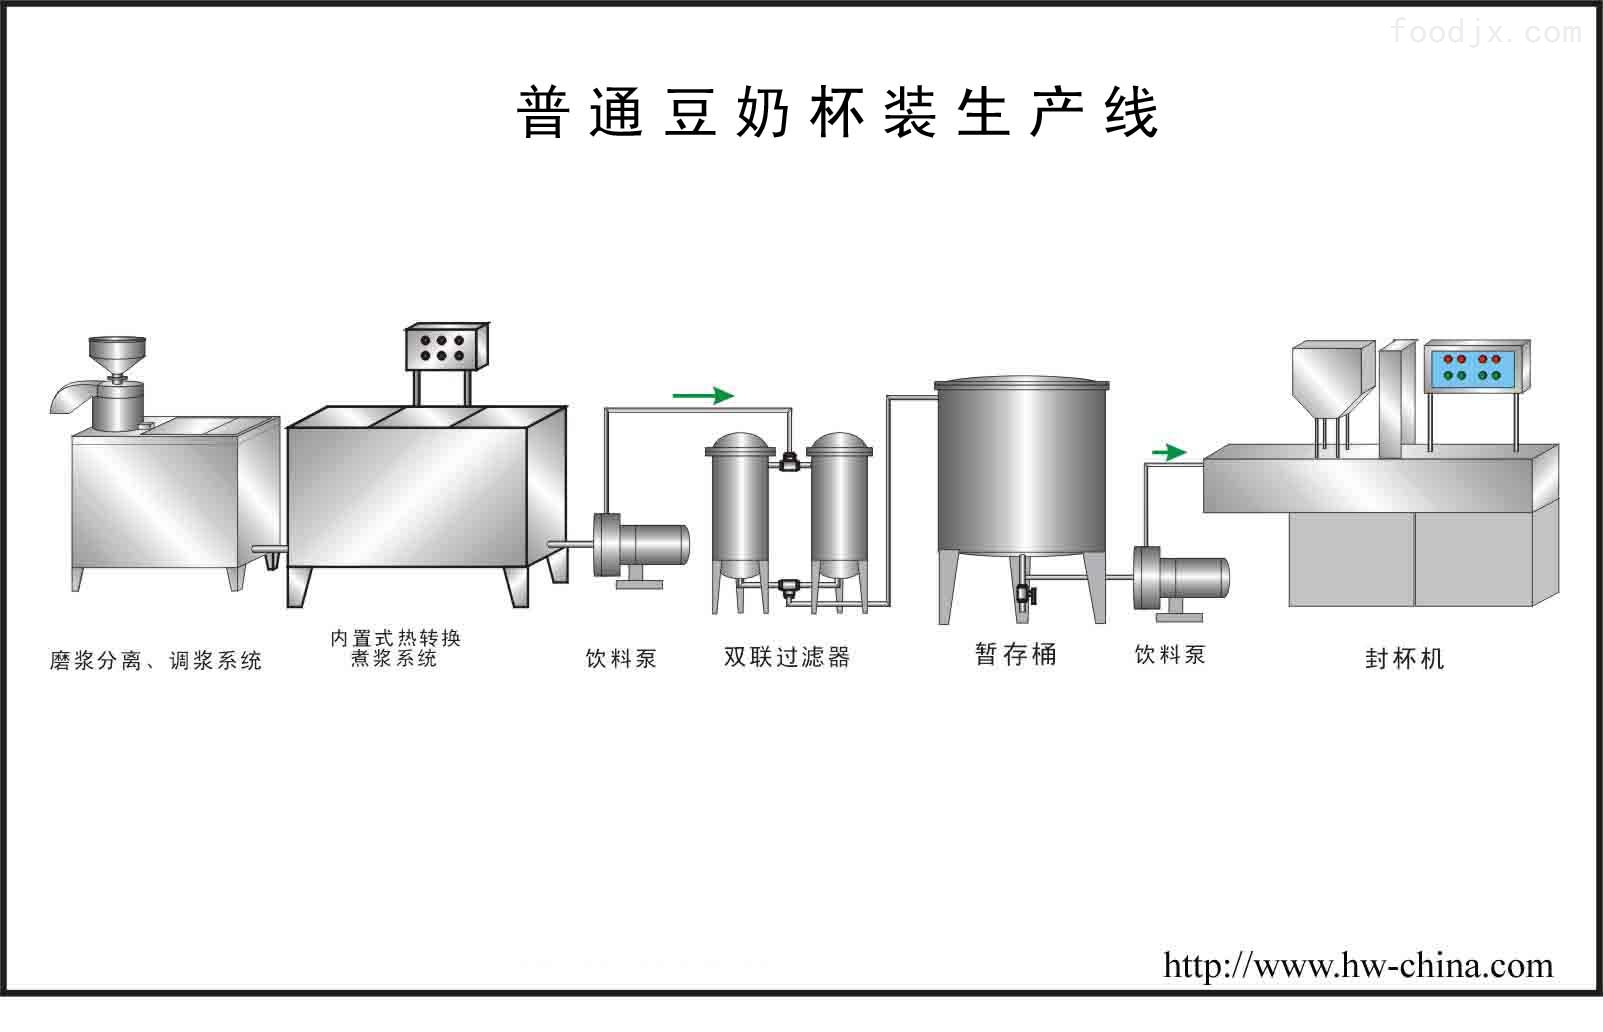 产品库 食品加工机械 豆制品设备 豆制品成套设备 豆浆 生产线分享